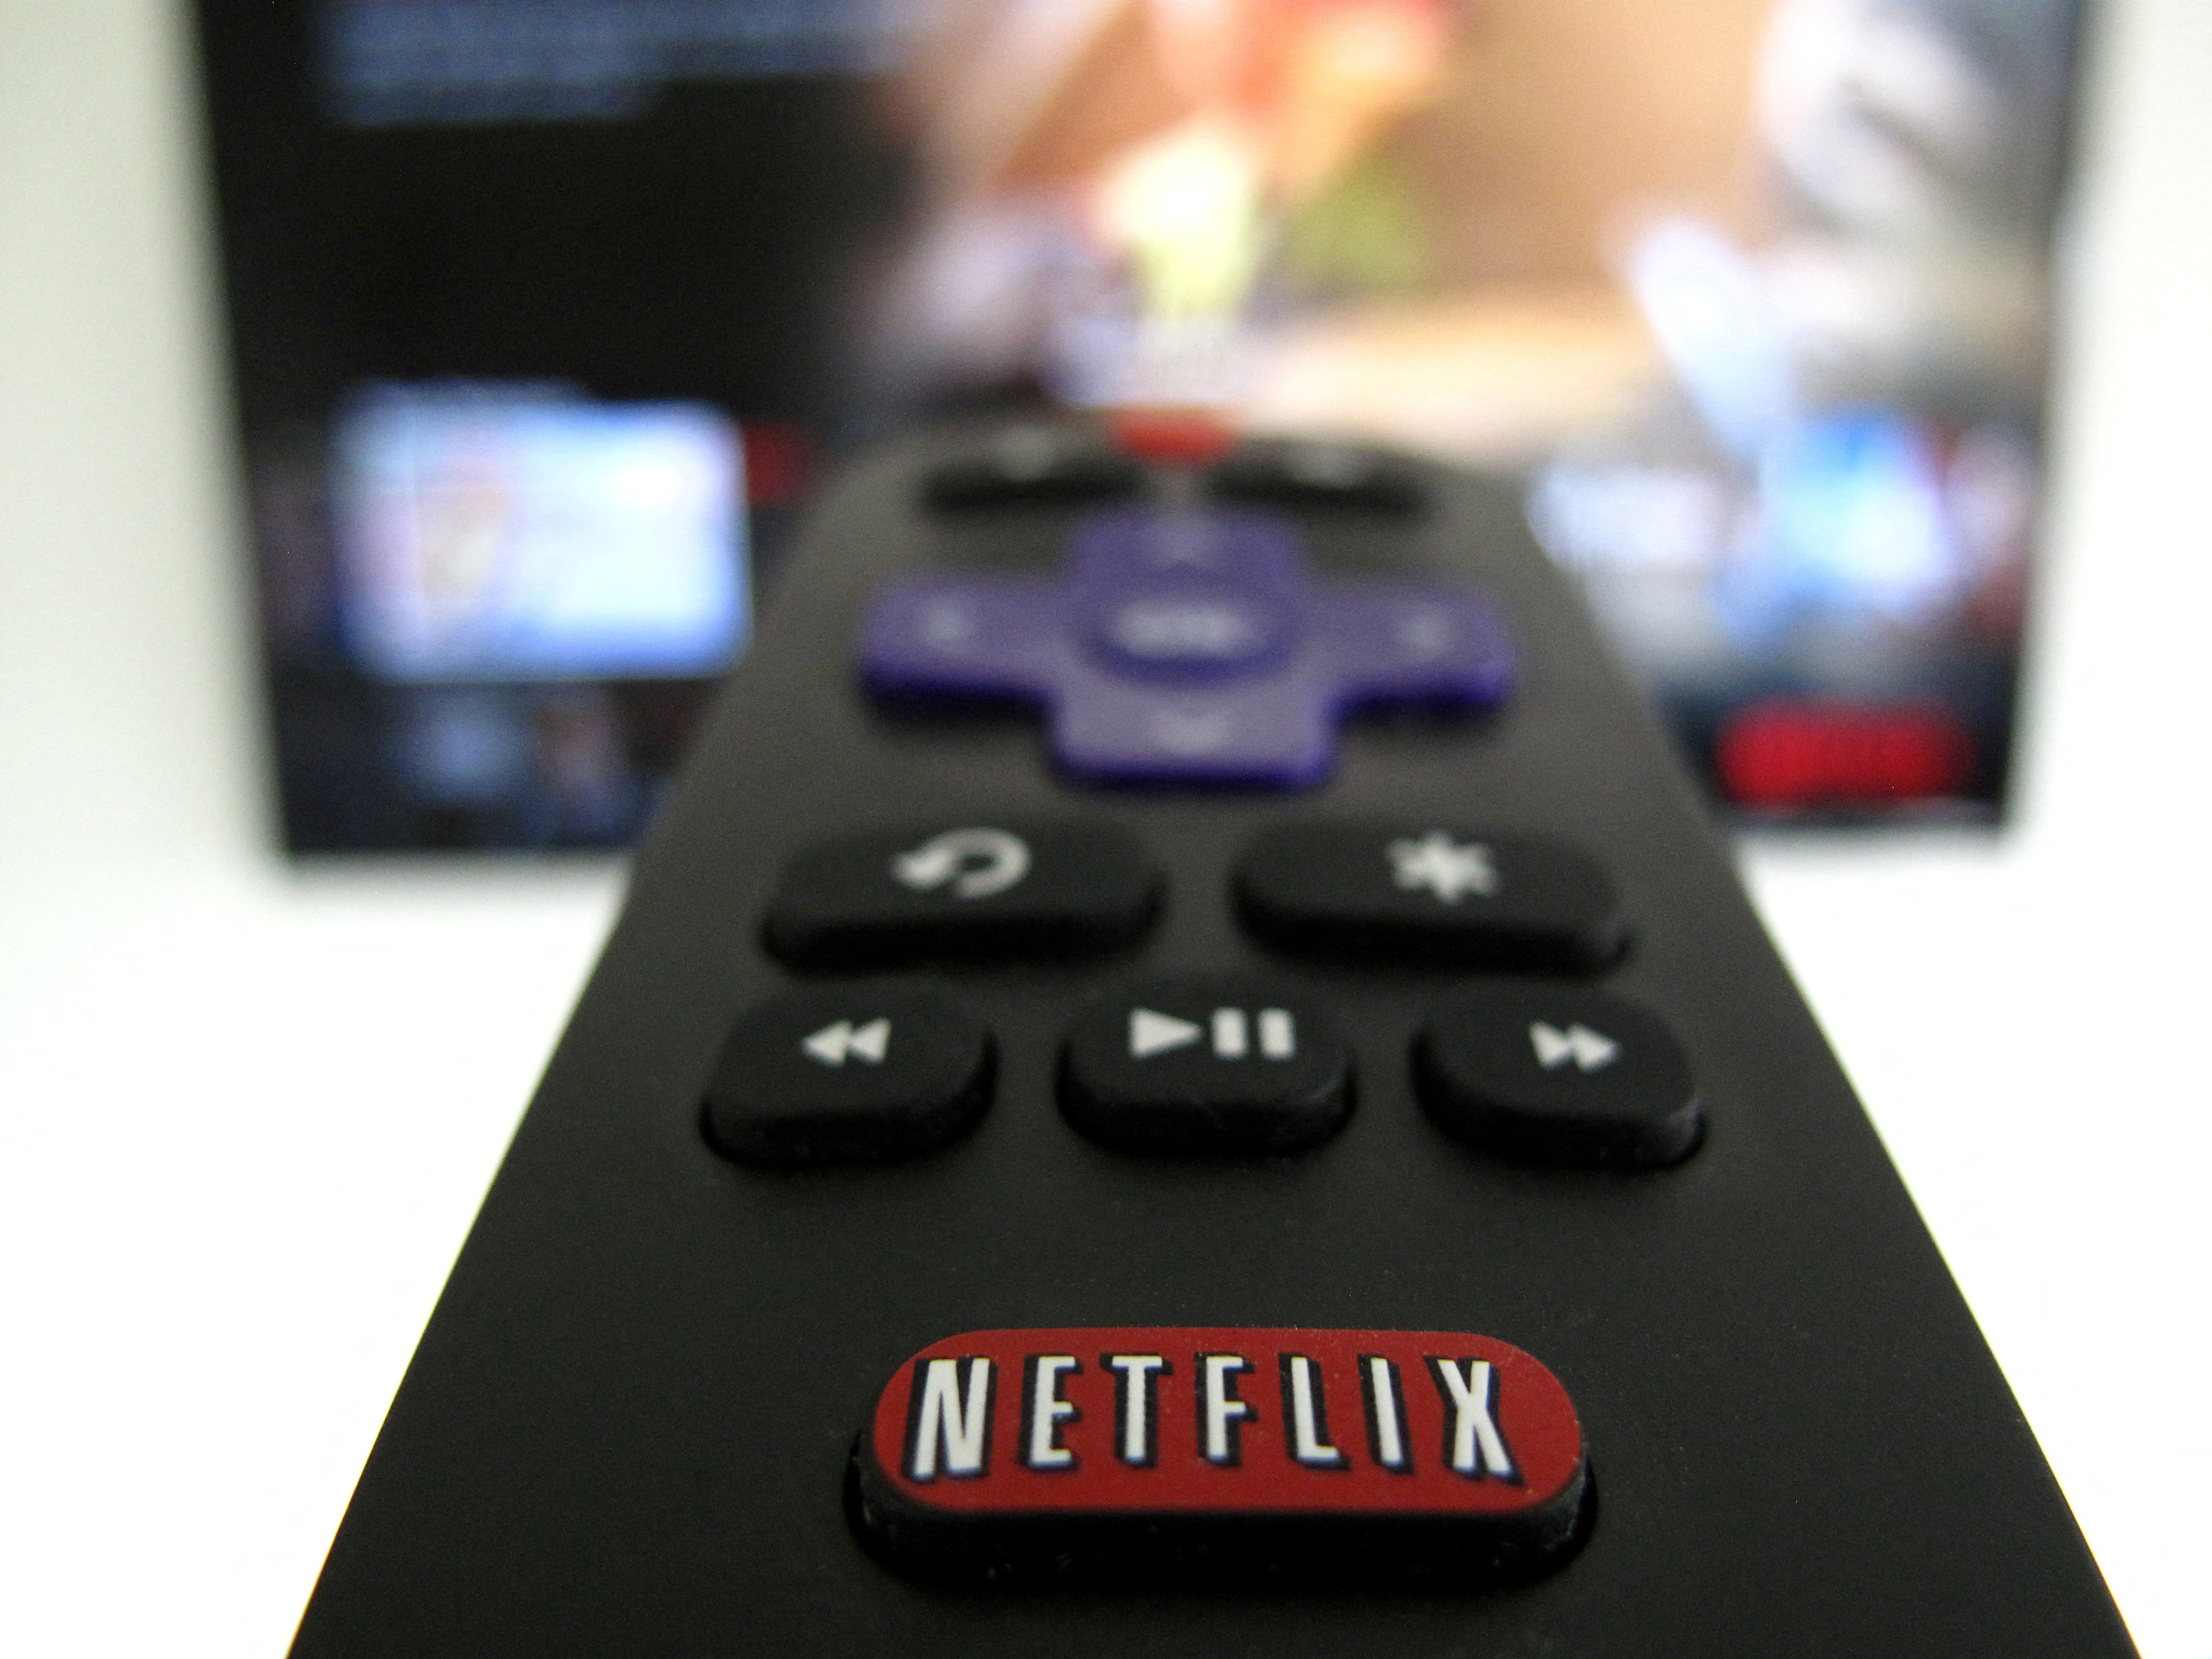 Aumentó Netflix: cuánto va a costar el servicio de streaming a partir de enero y cuánto va a haber que pagar de impuestos